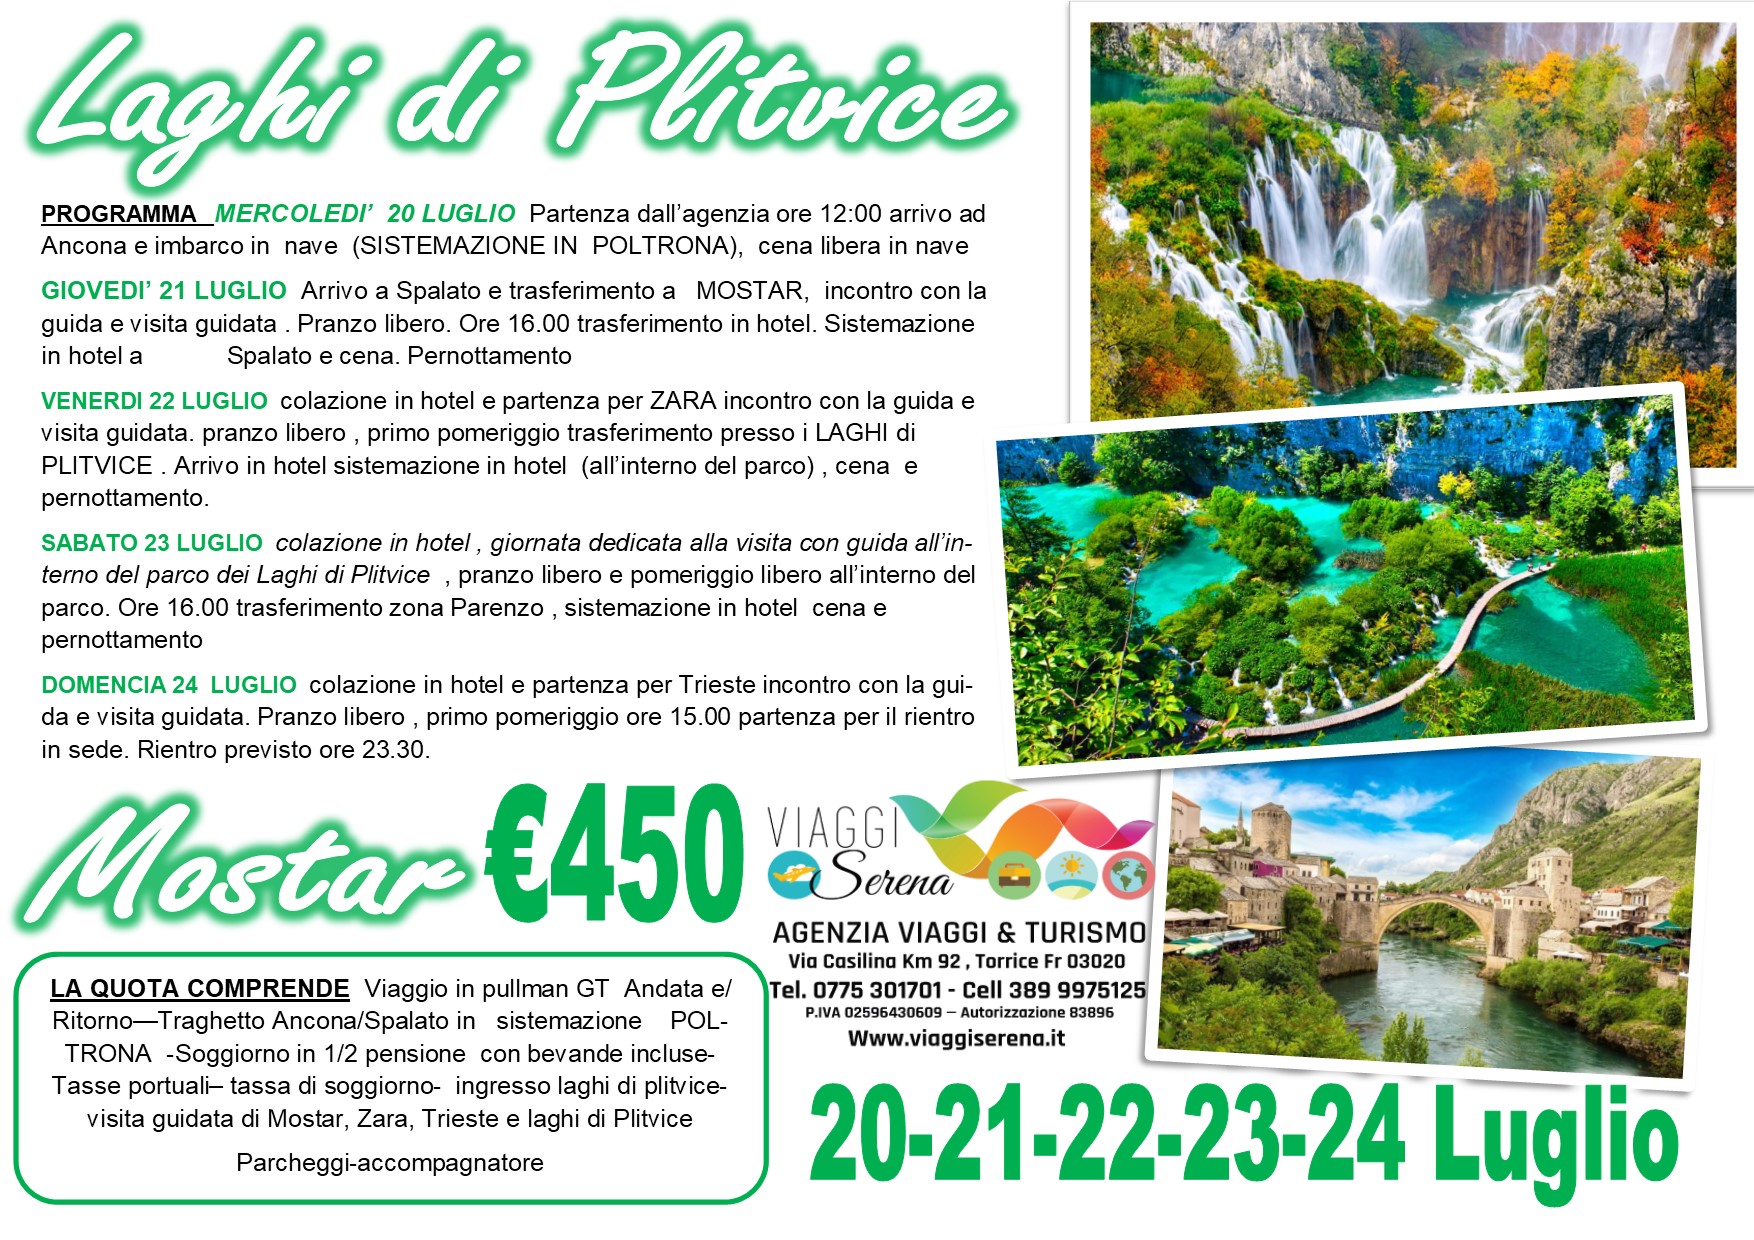 Viaggi di Gruppo: Laghi di PLITVICE, Mostar, Zara & Trieste 20-21-22-23-24 Luglio €450,00